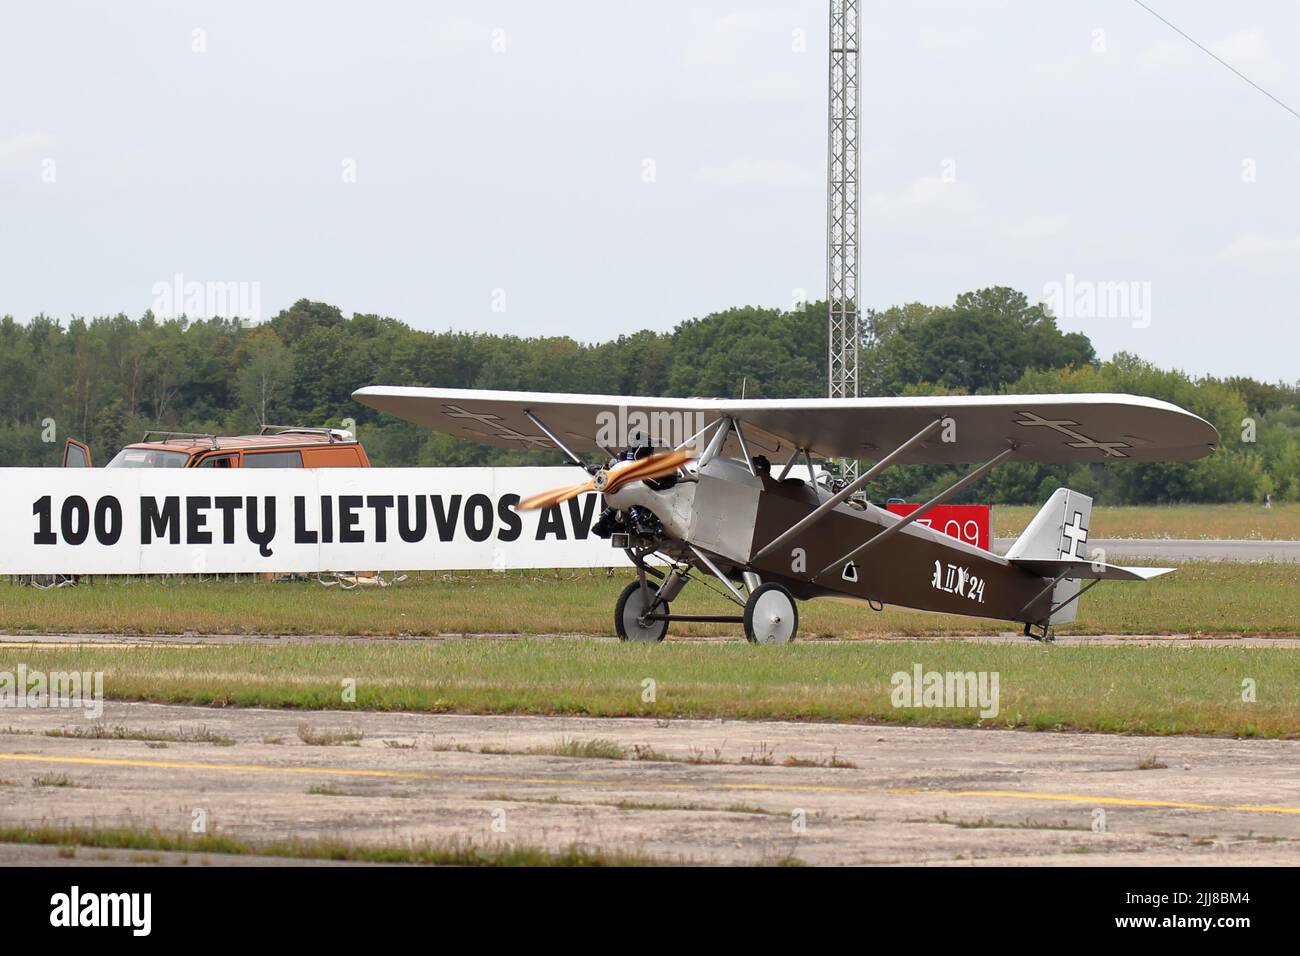 KAUNAS / LITUANIE - 10 août 2019: Lituanien ANBO II réplique avion vintage (initialement conçu par Antanas Gustaitis en 1927) exposition de vol Banque D'Images